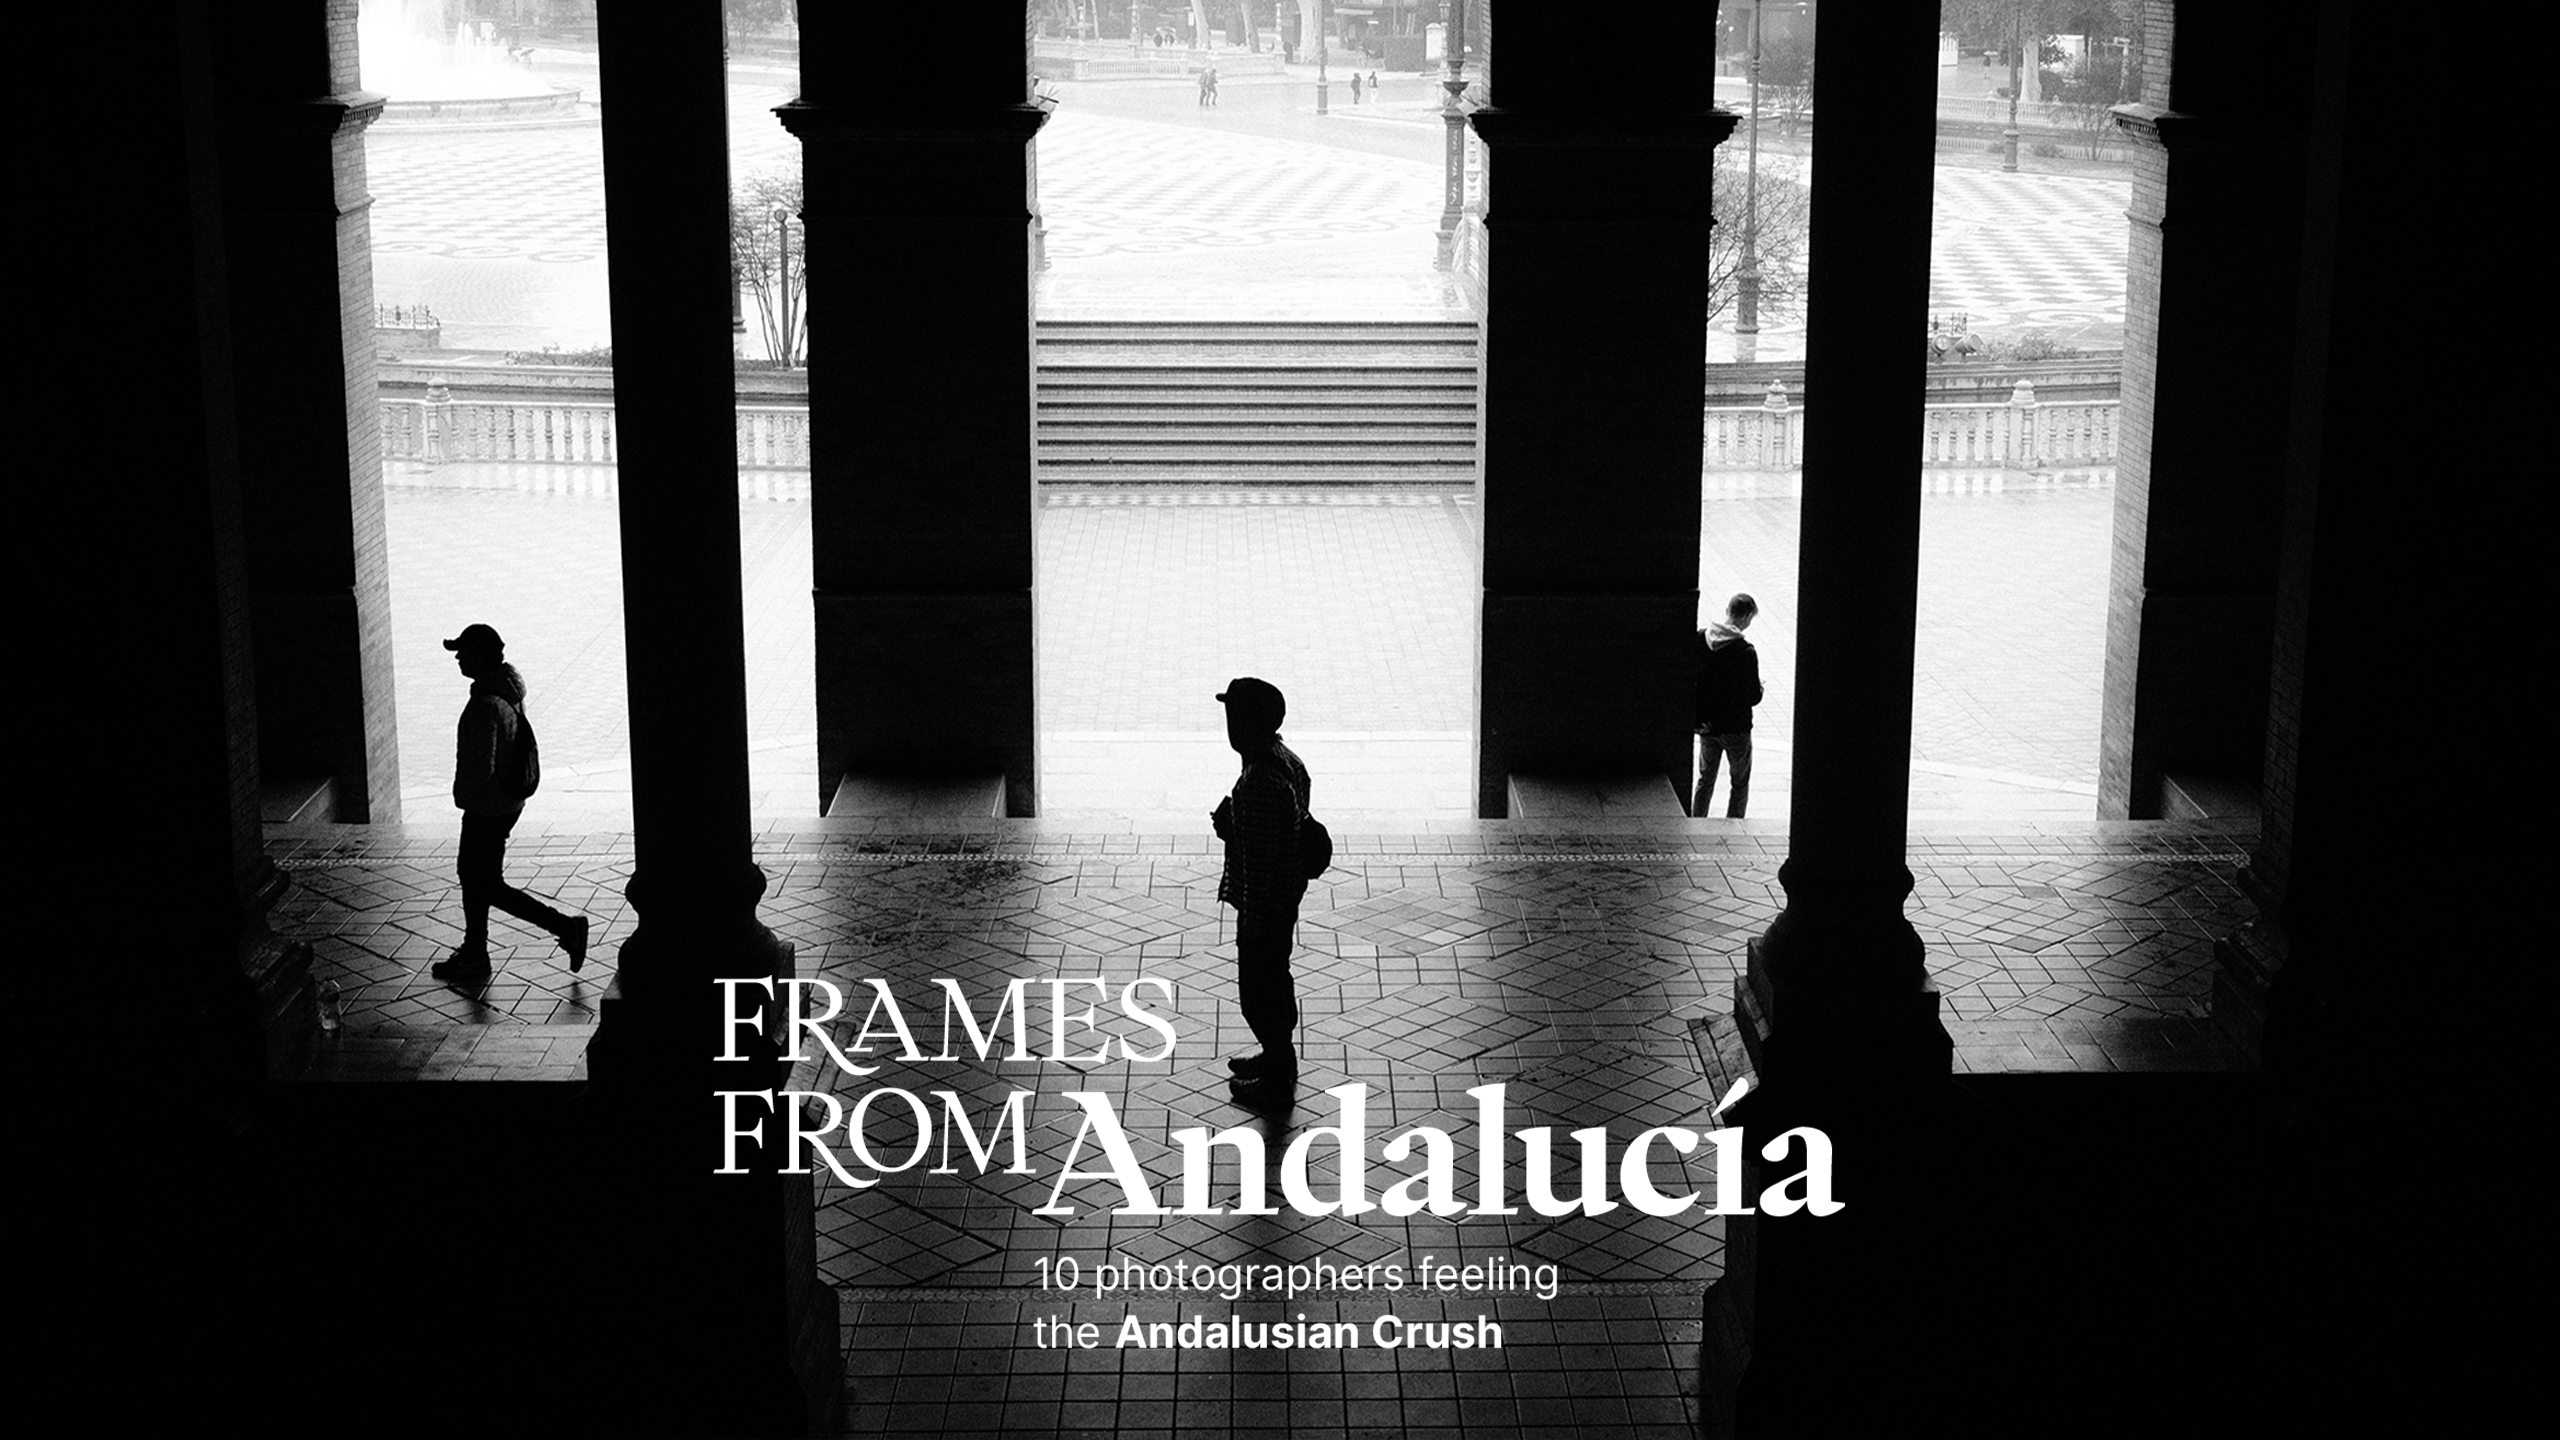 Ya disponible el tráiler de “Frames From Andalucía”